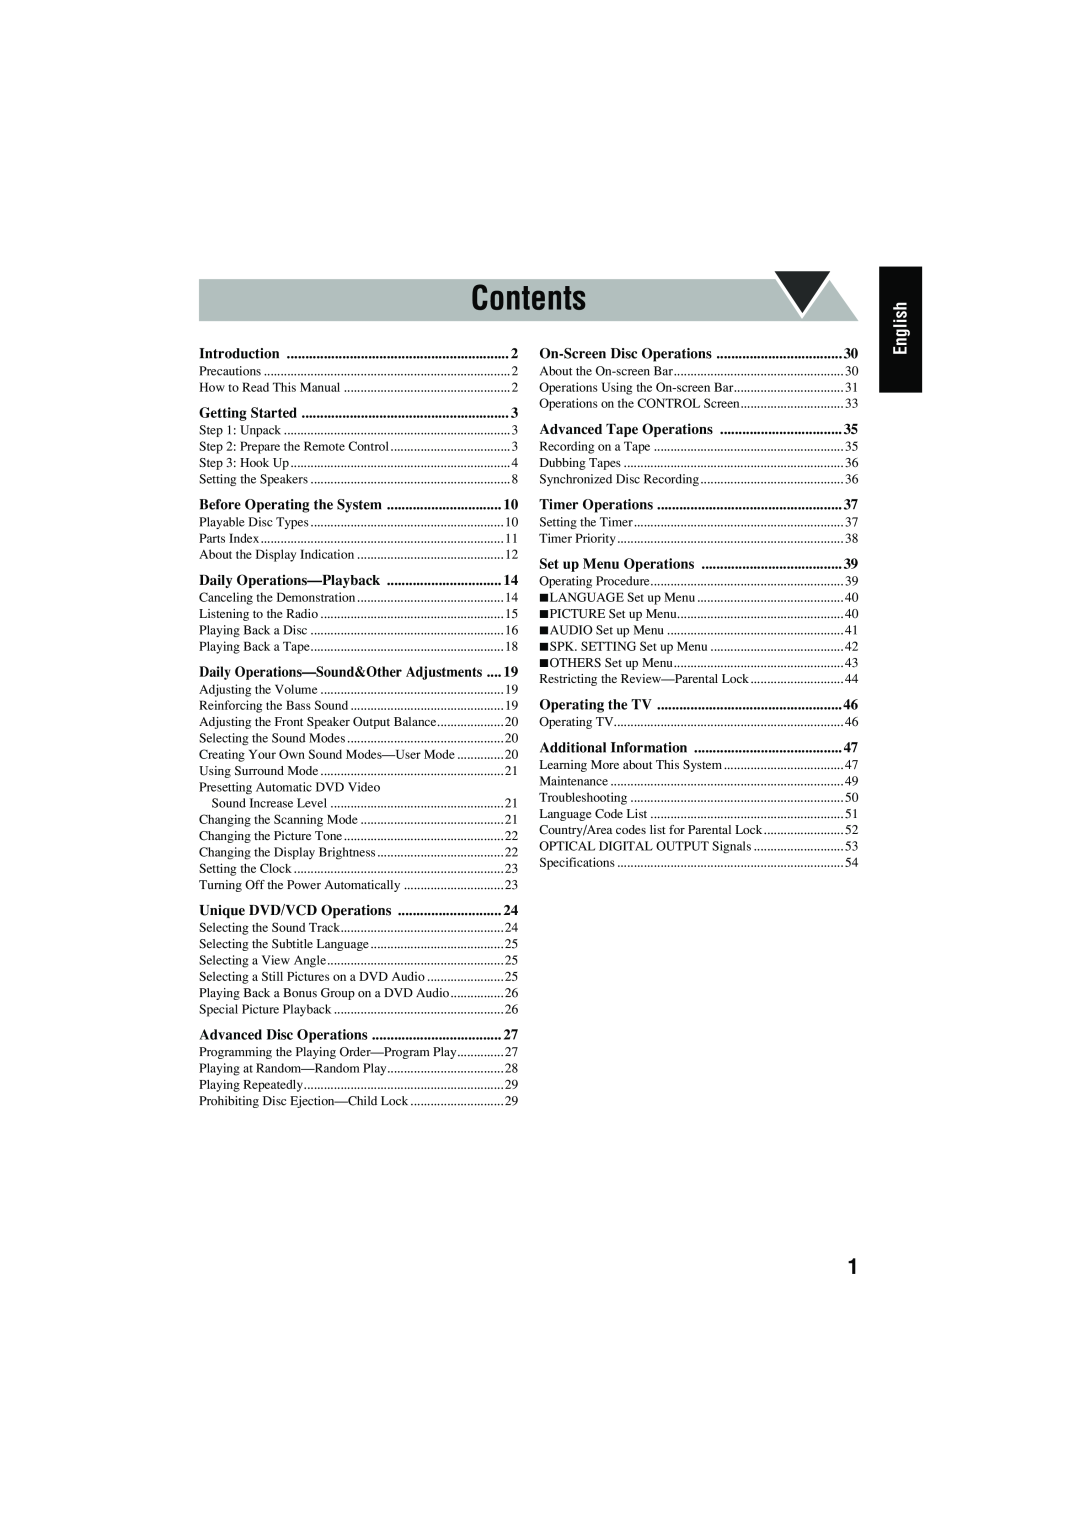 JVC CA-MXJD8UW manual Contents, English, Precautions 